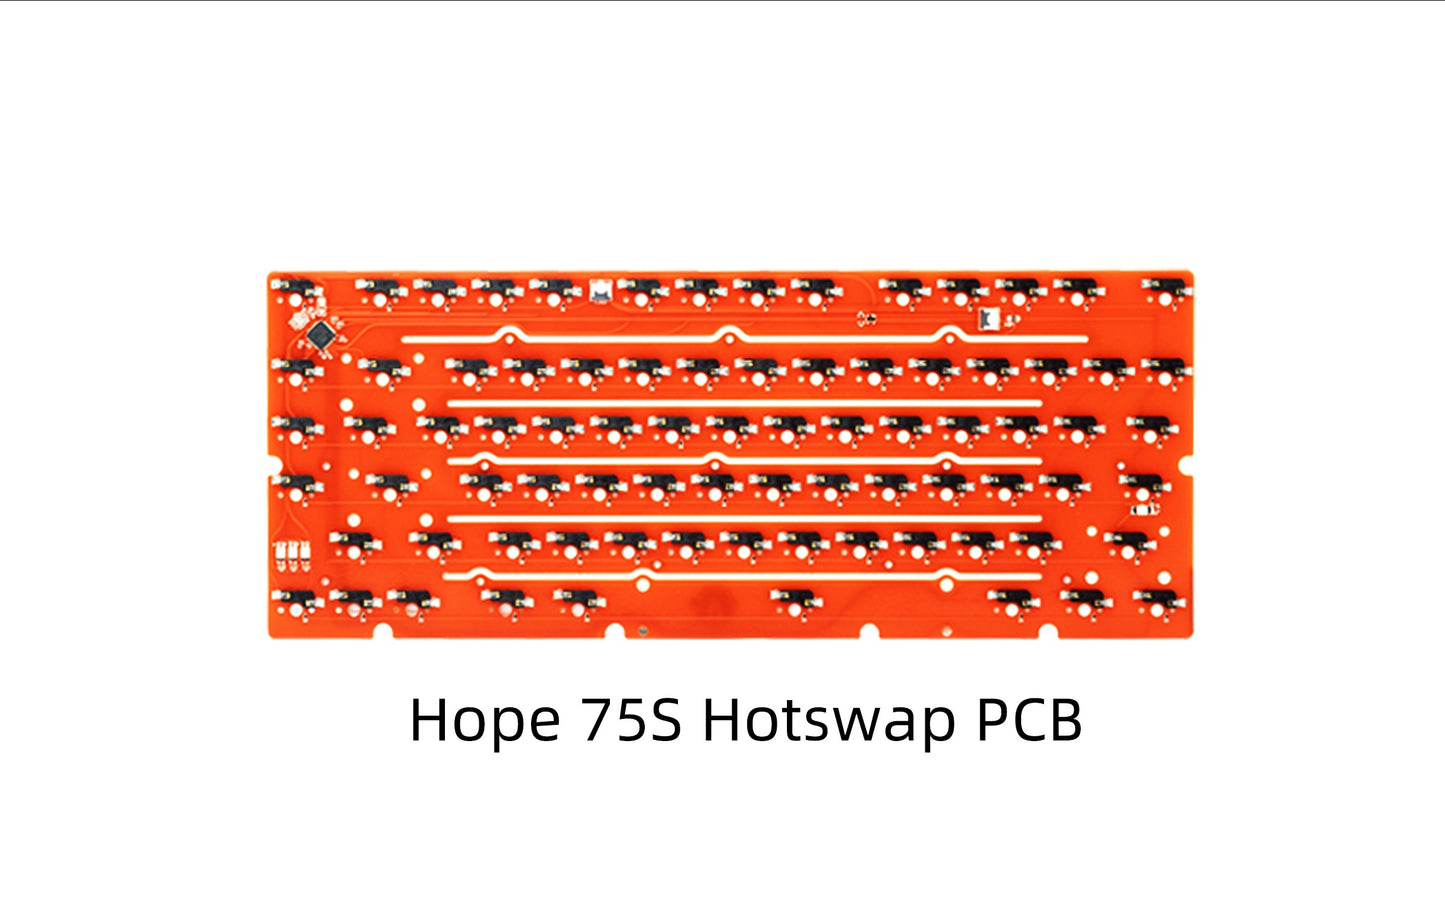 [EXTRA] HOPE75S HOTSWAP PCB (KOSTENLOSER VERSAND IN EINIGE LÄNDER)